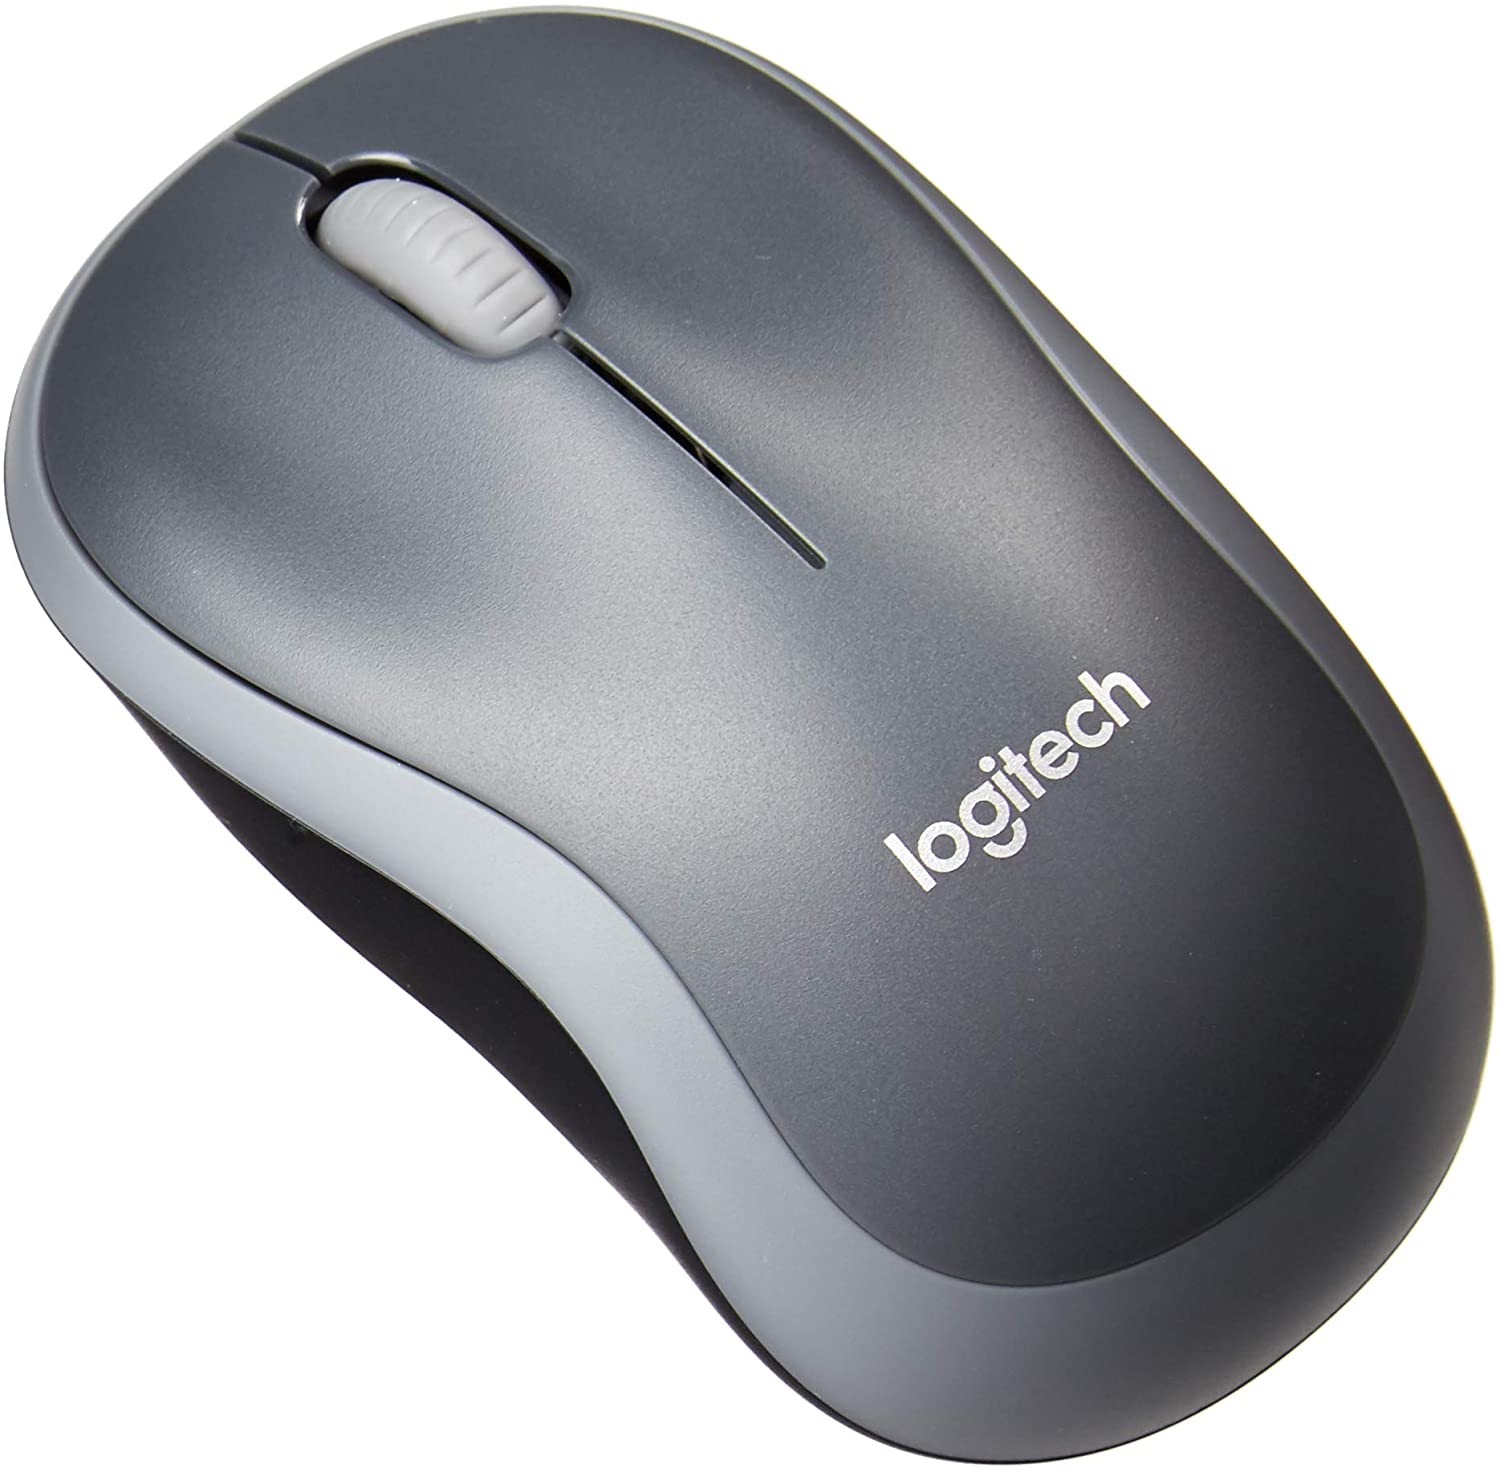 Logitech M185 Compact Wireless Mouse - Mombasa Computers